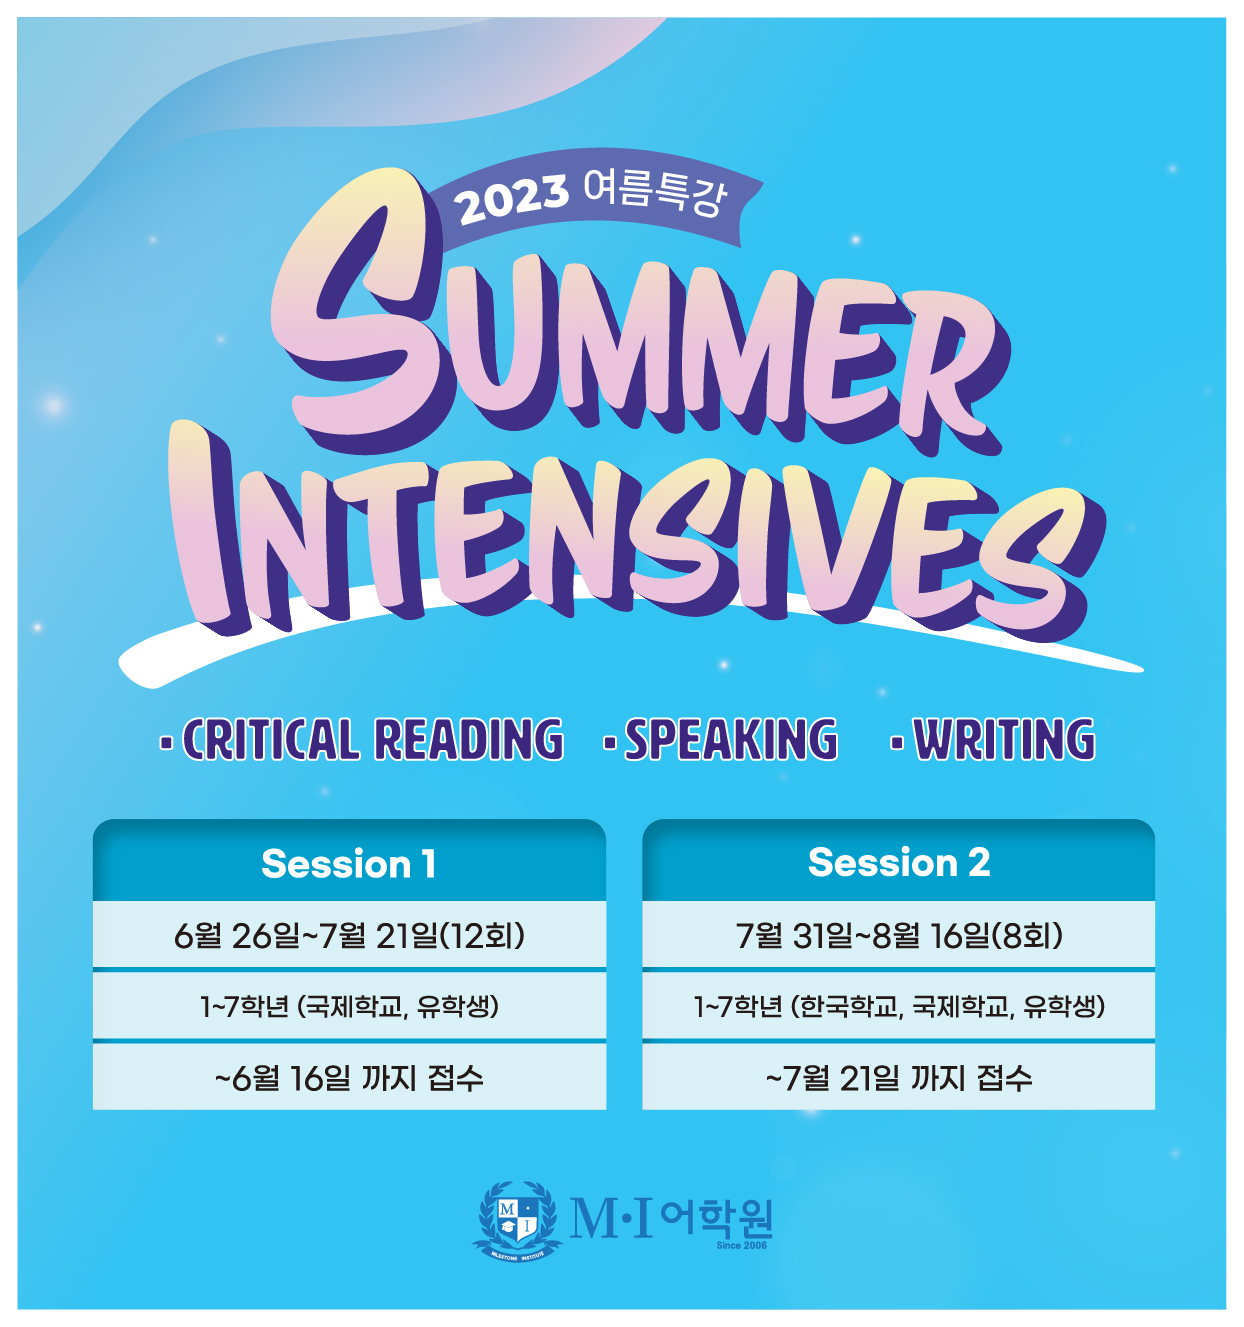 2023 Summer Intensives_mobile-01.jpg